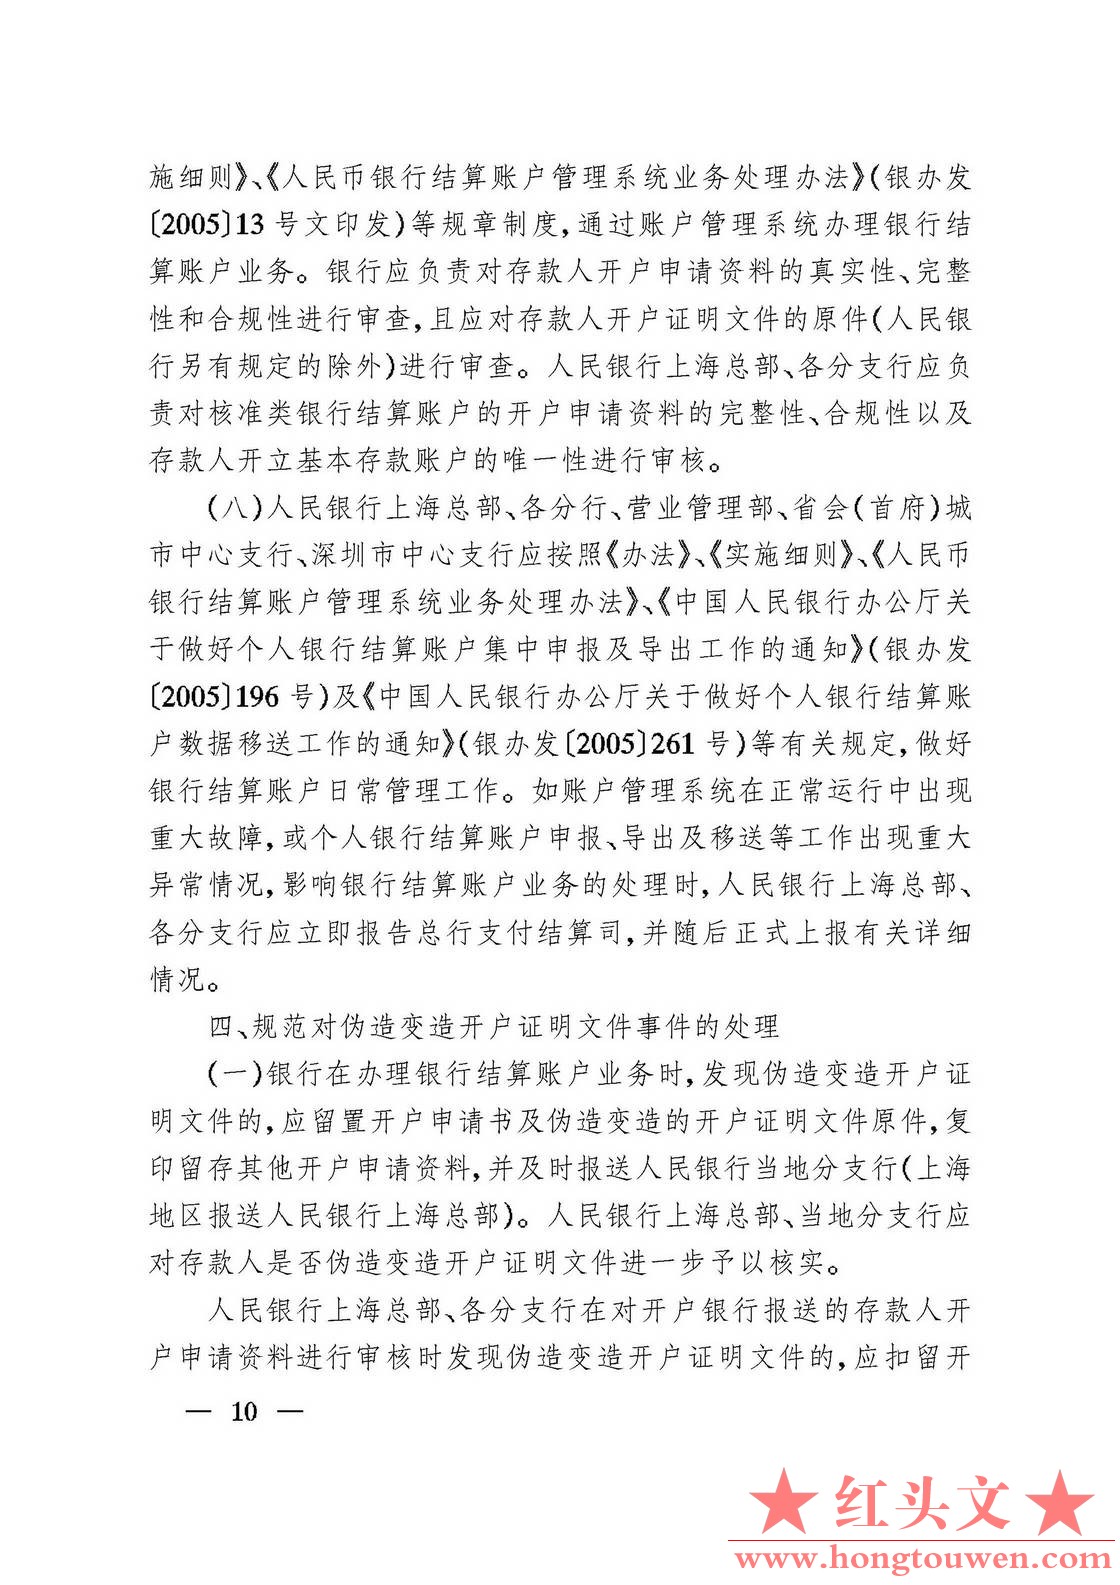 银发[2006]71号-中国人民银行关于规范人民币银行结算账户管理有关问题的通知_页面_10..jpg